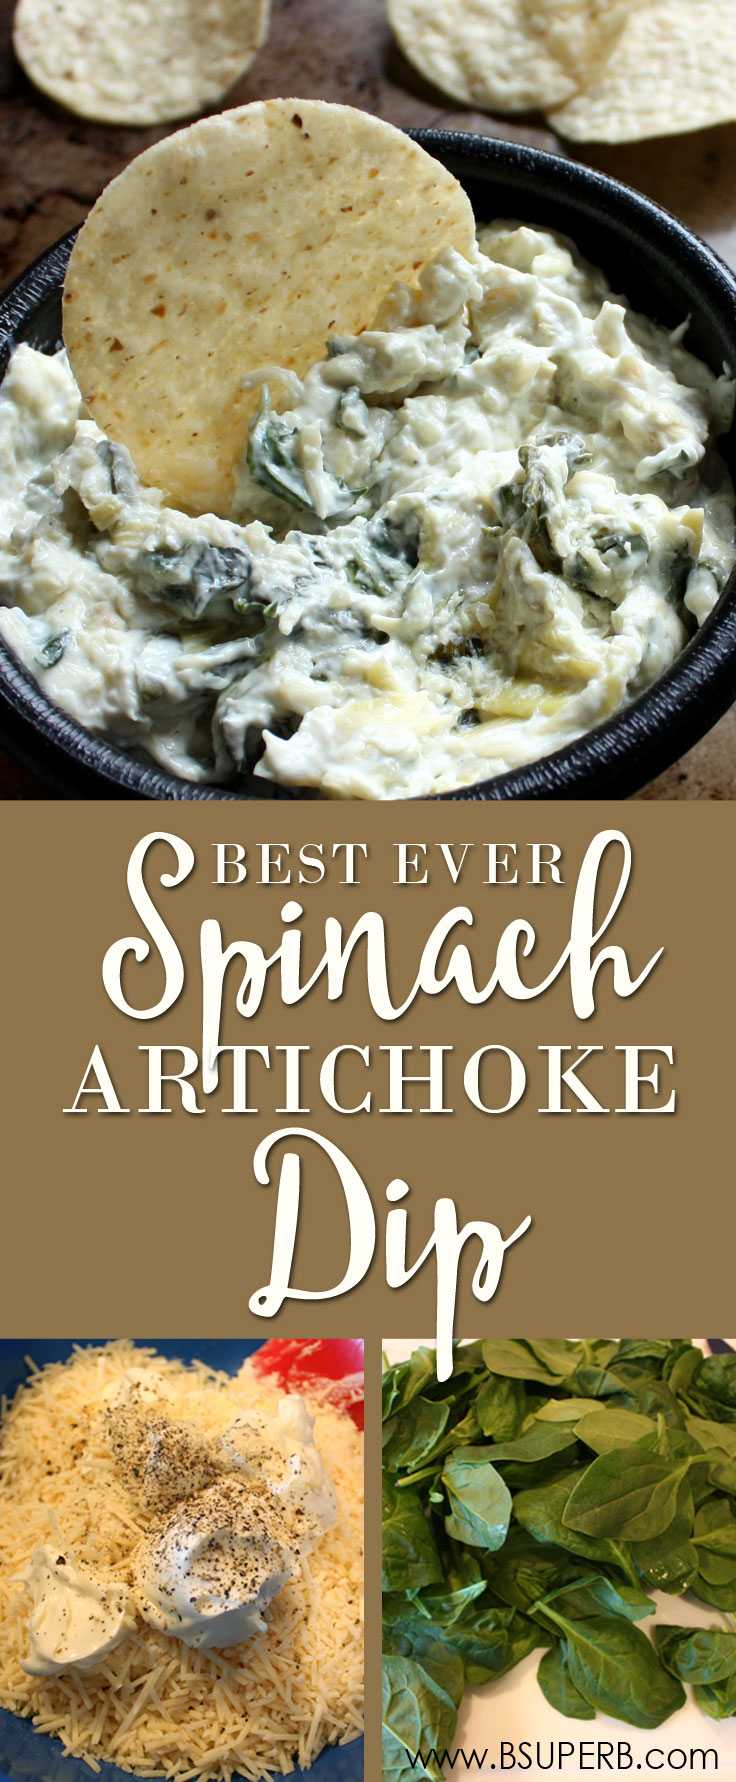 Best Ever Hot Spinach Artichoke Dip